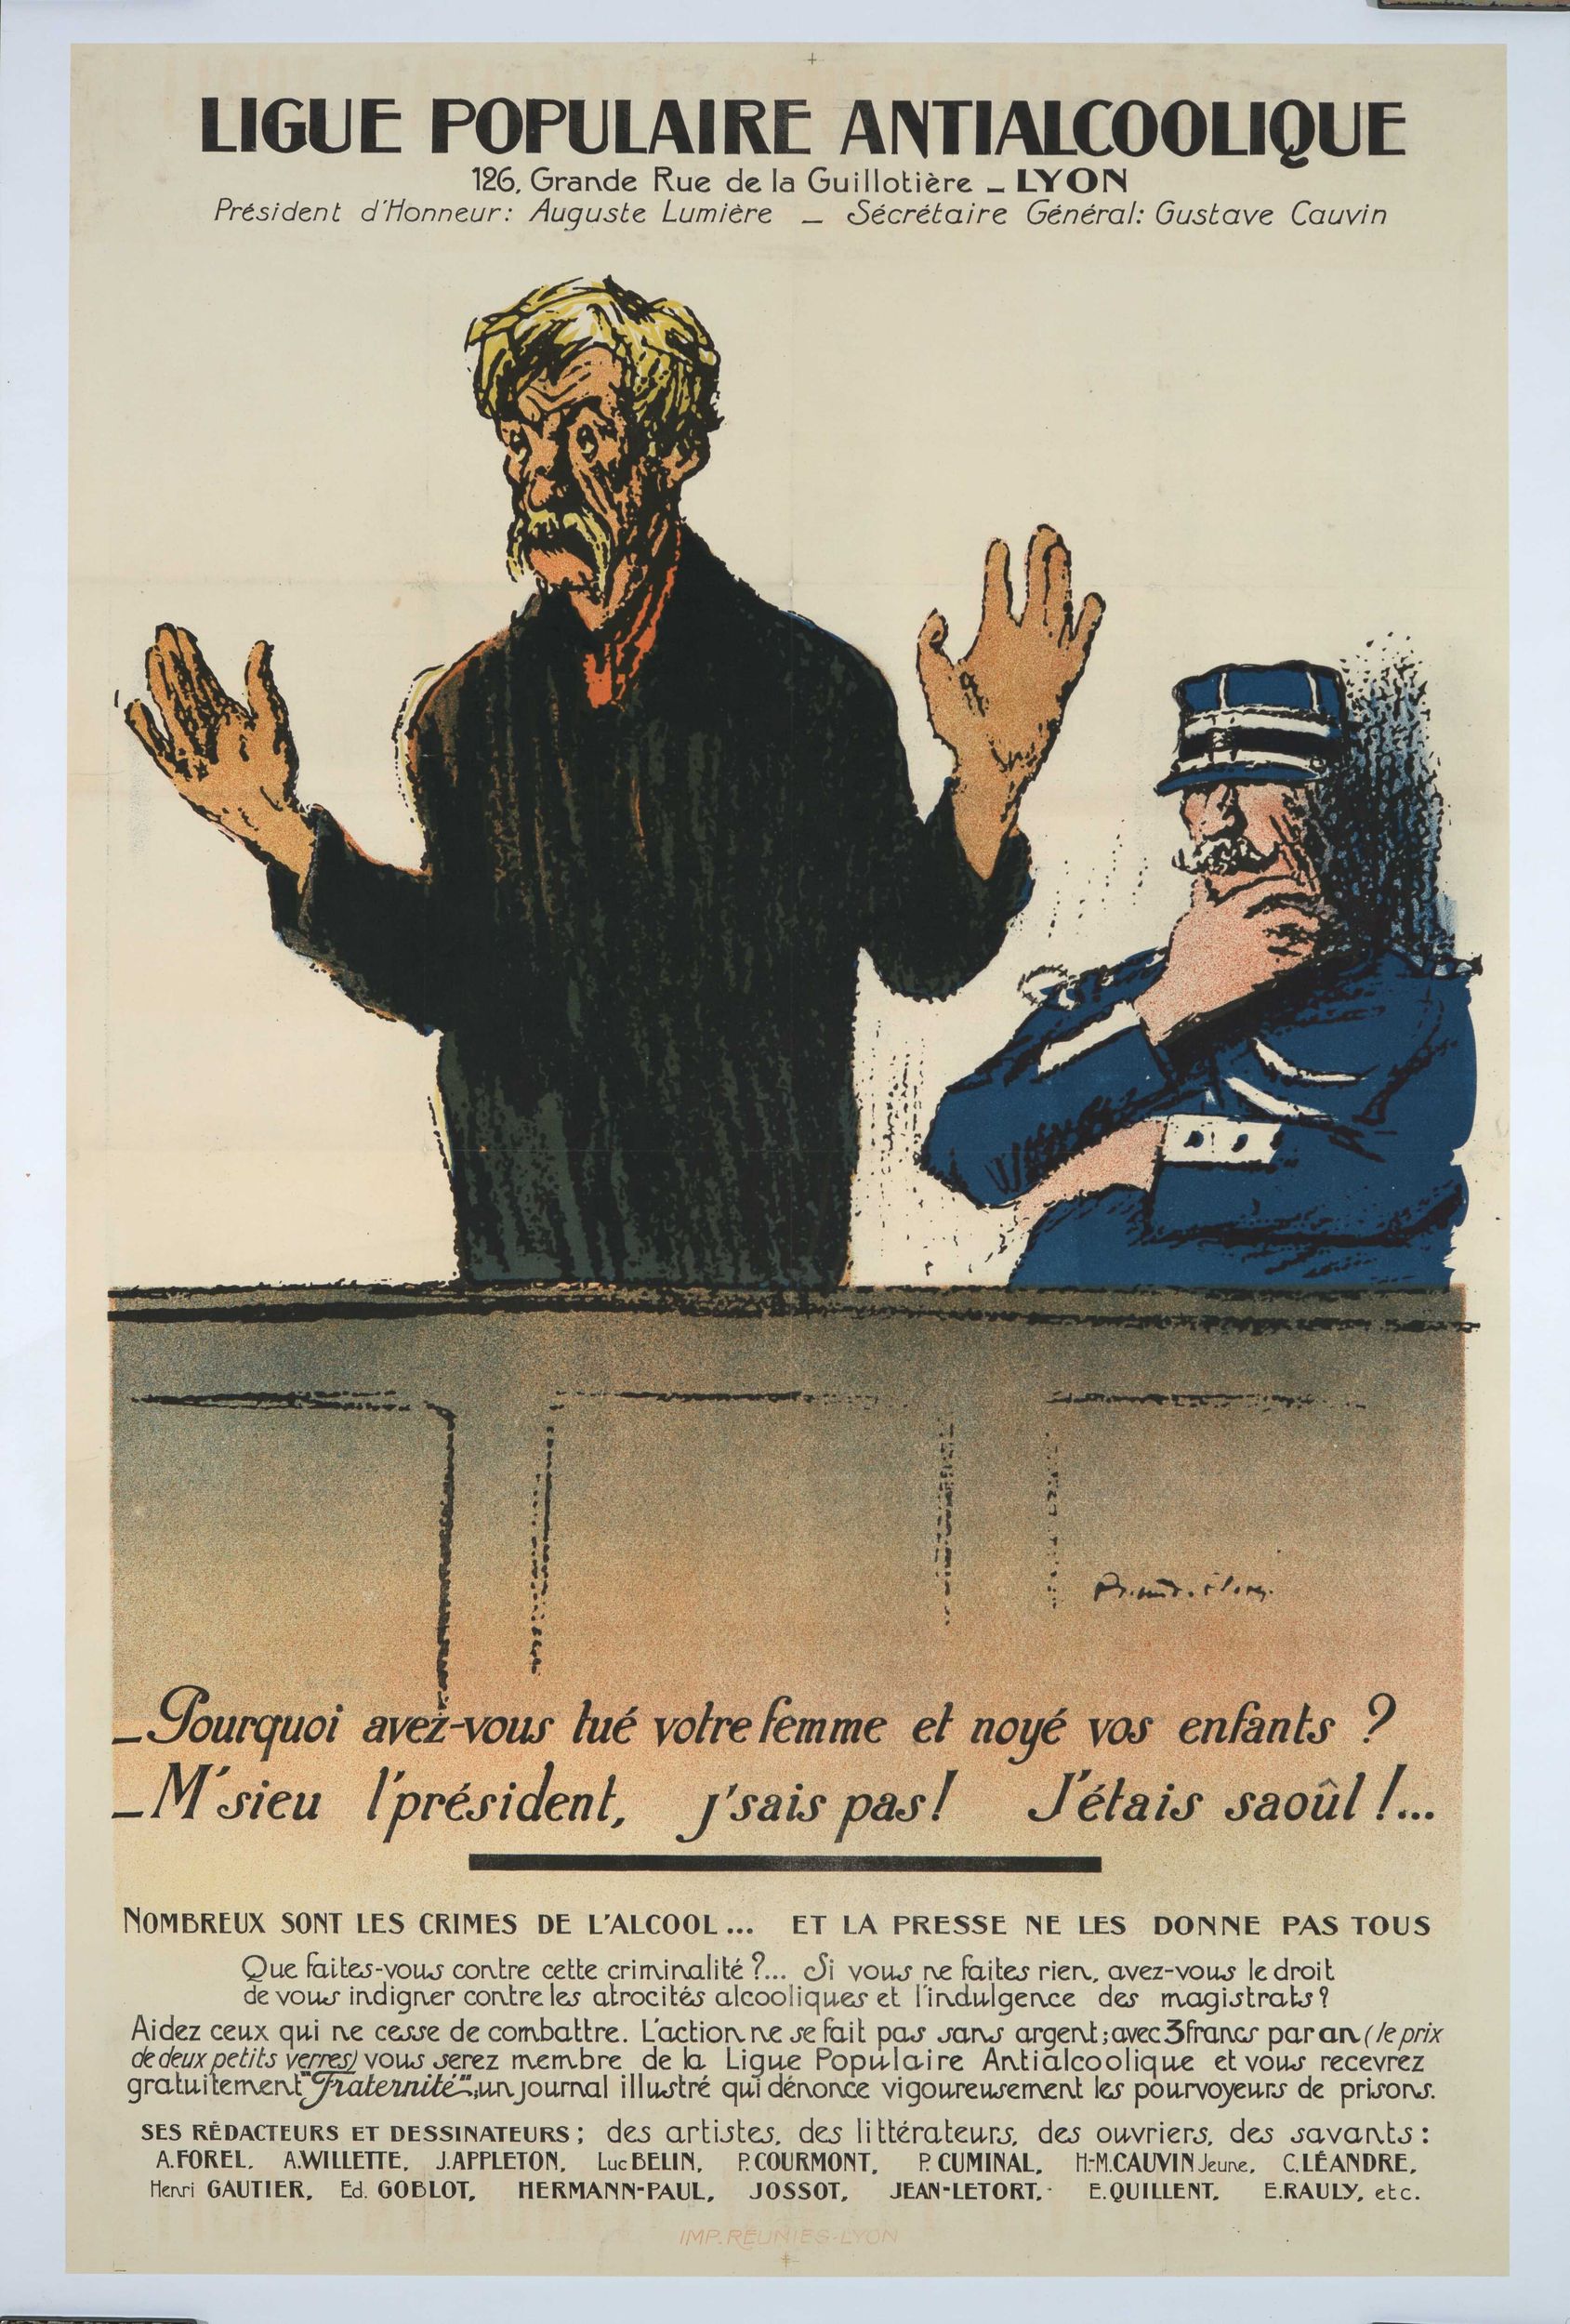 Ligue populaire antialcoolique : affiche publicitaire (lithographie couleur) très grand format (1900, cote : 7FI/3426)